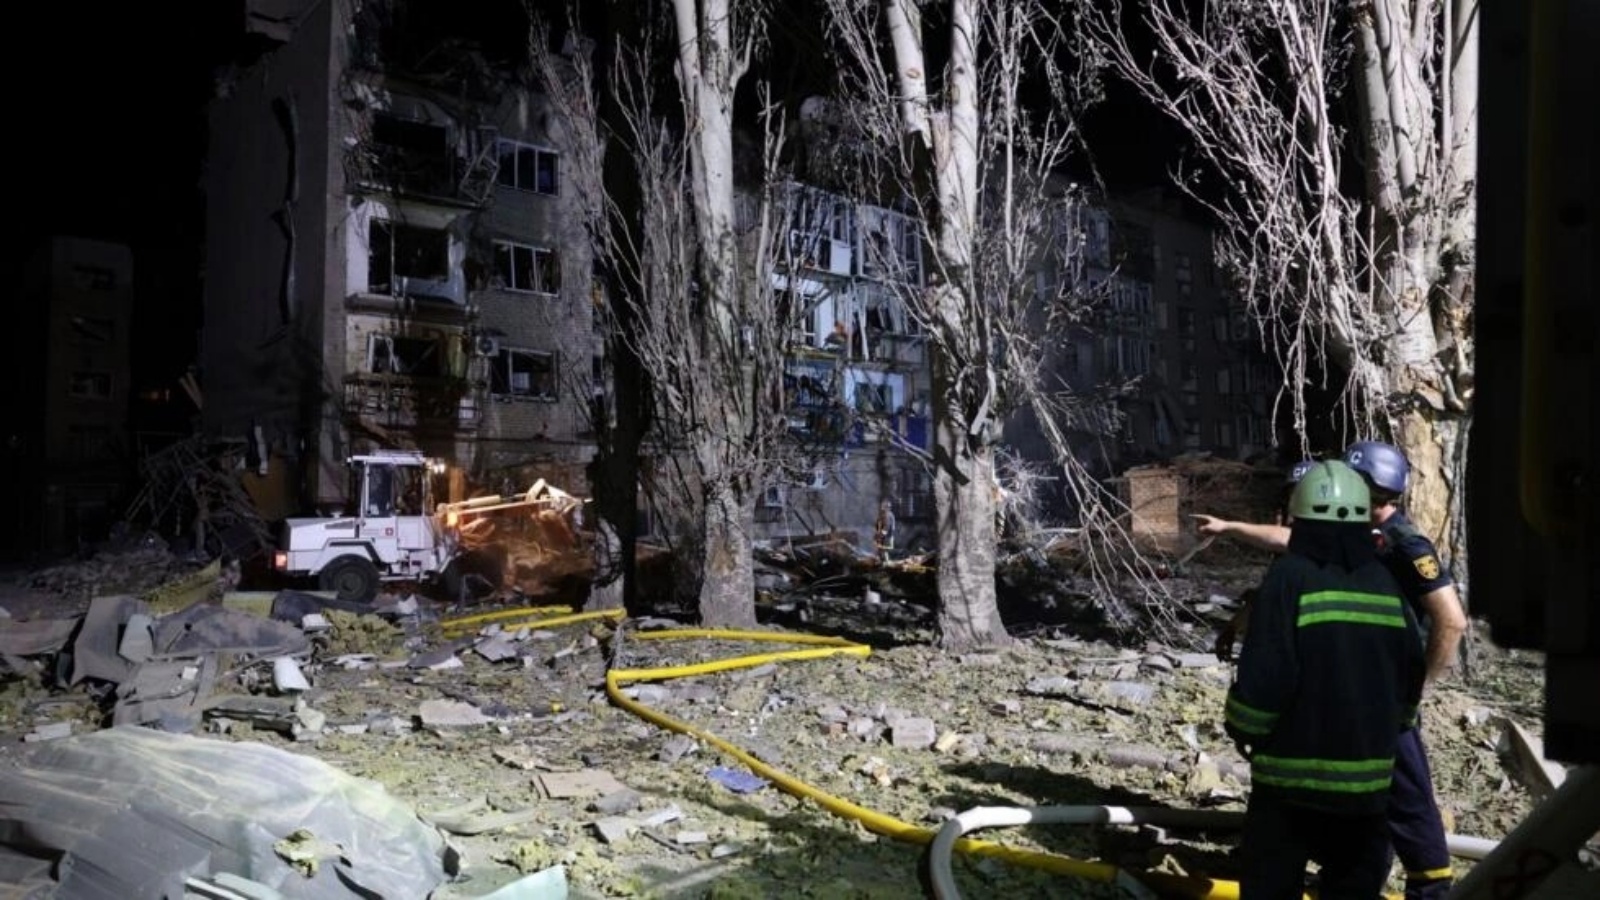 عمال الانقاذ يؤدون عملهم قرب مبنى لحقت به أضرار كبيرة جراء ضربة روسية في بوكروفسك في أوكرانيا في الثامن من أغسطس 2023 